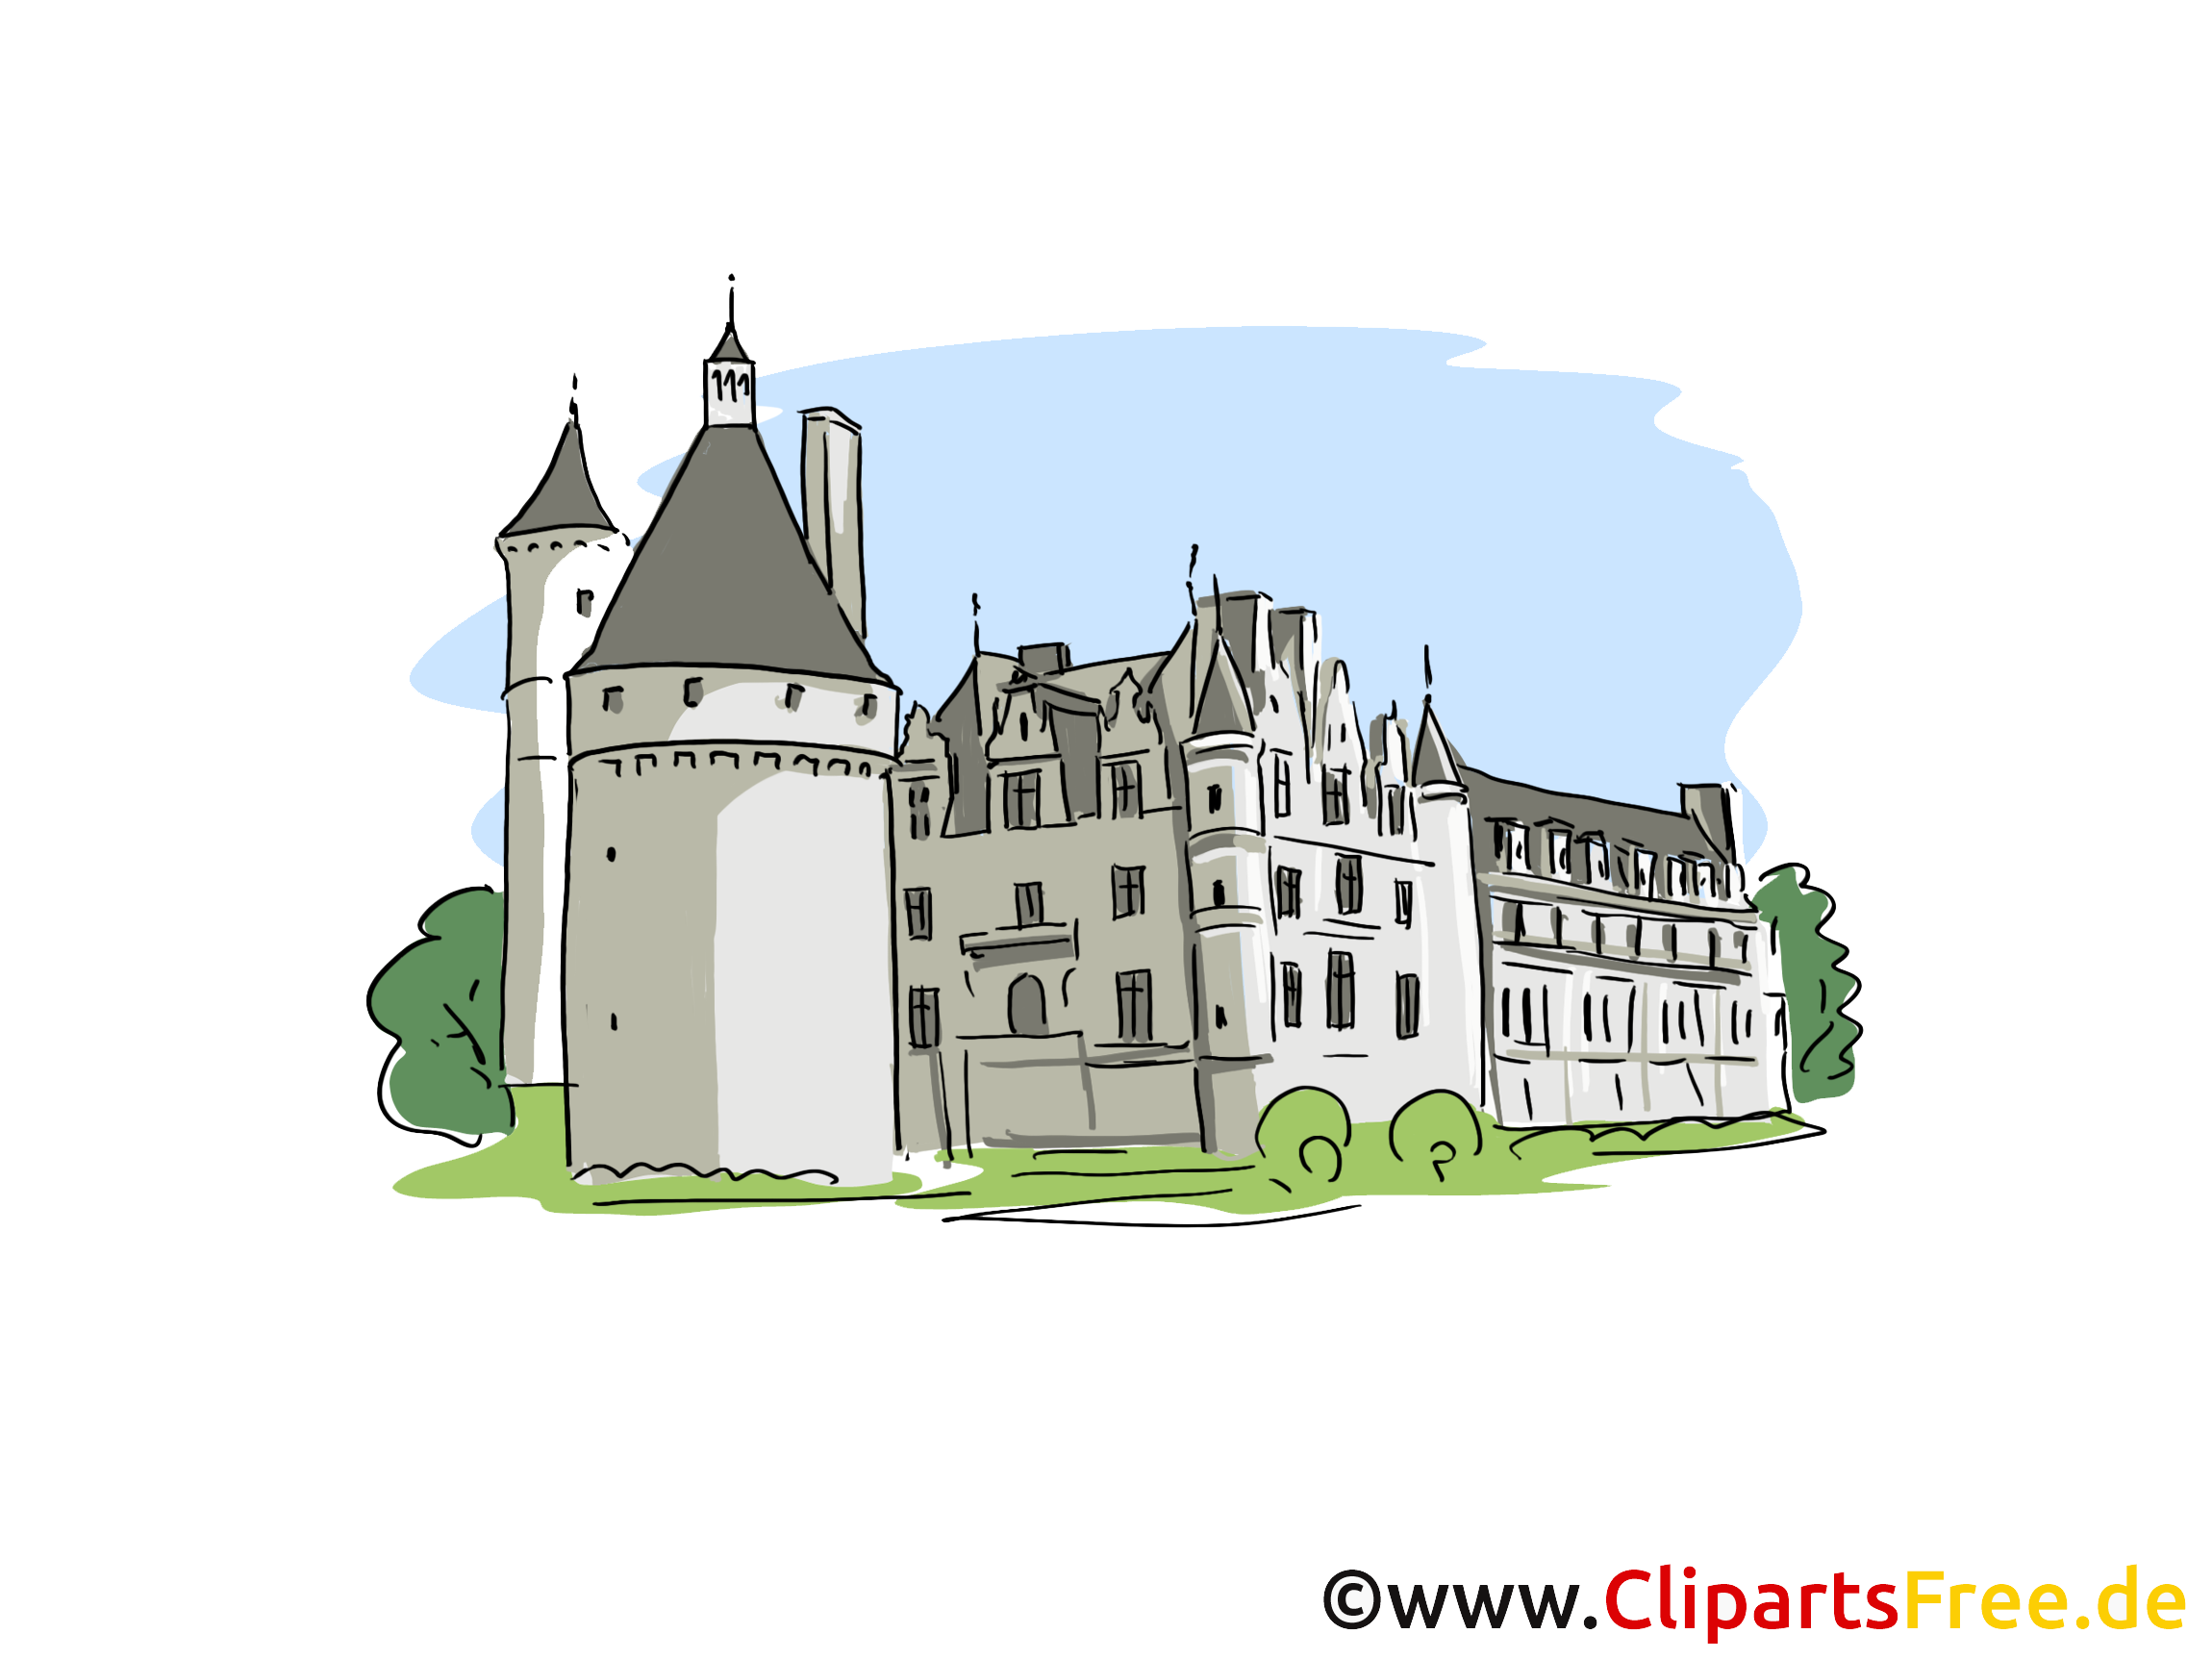 Château image à télécharger - Tours clipart